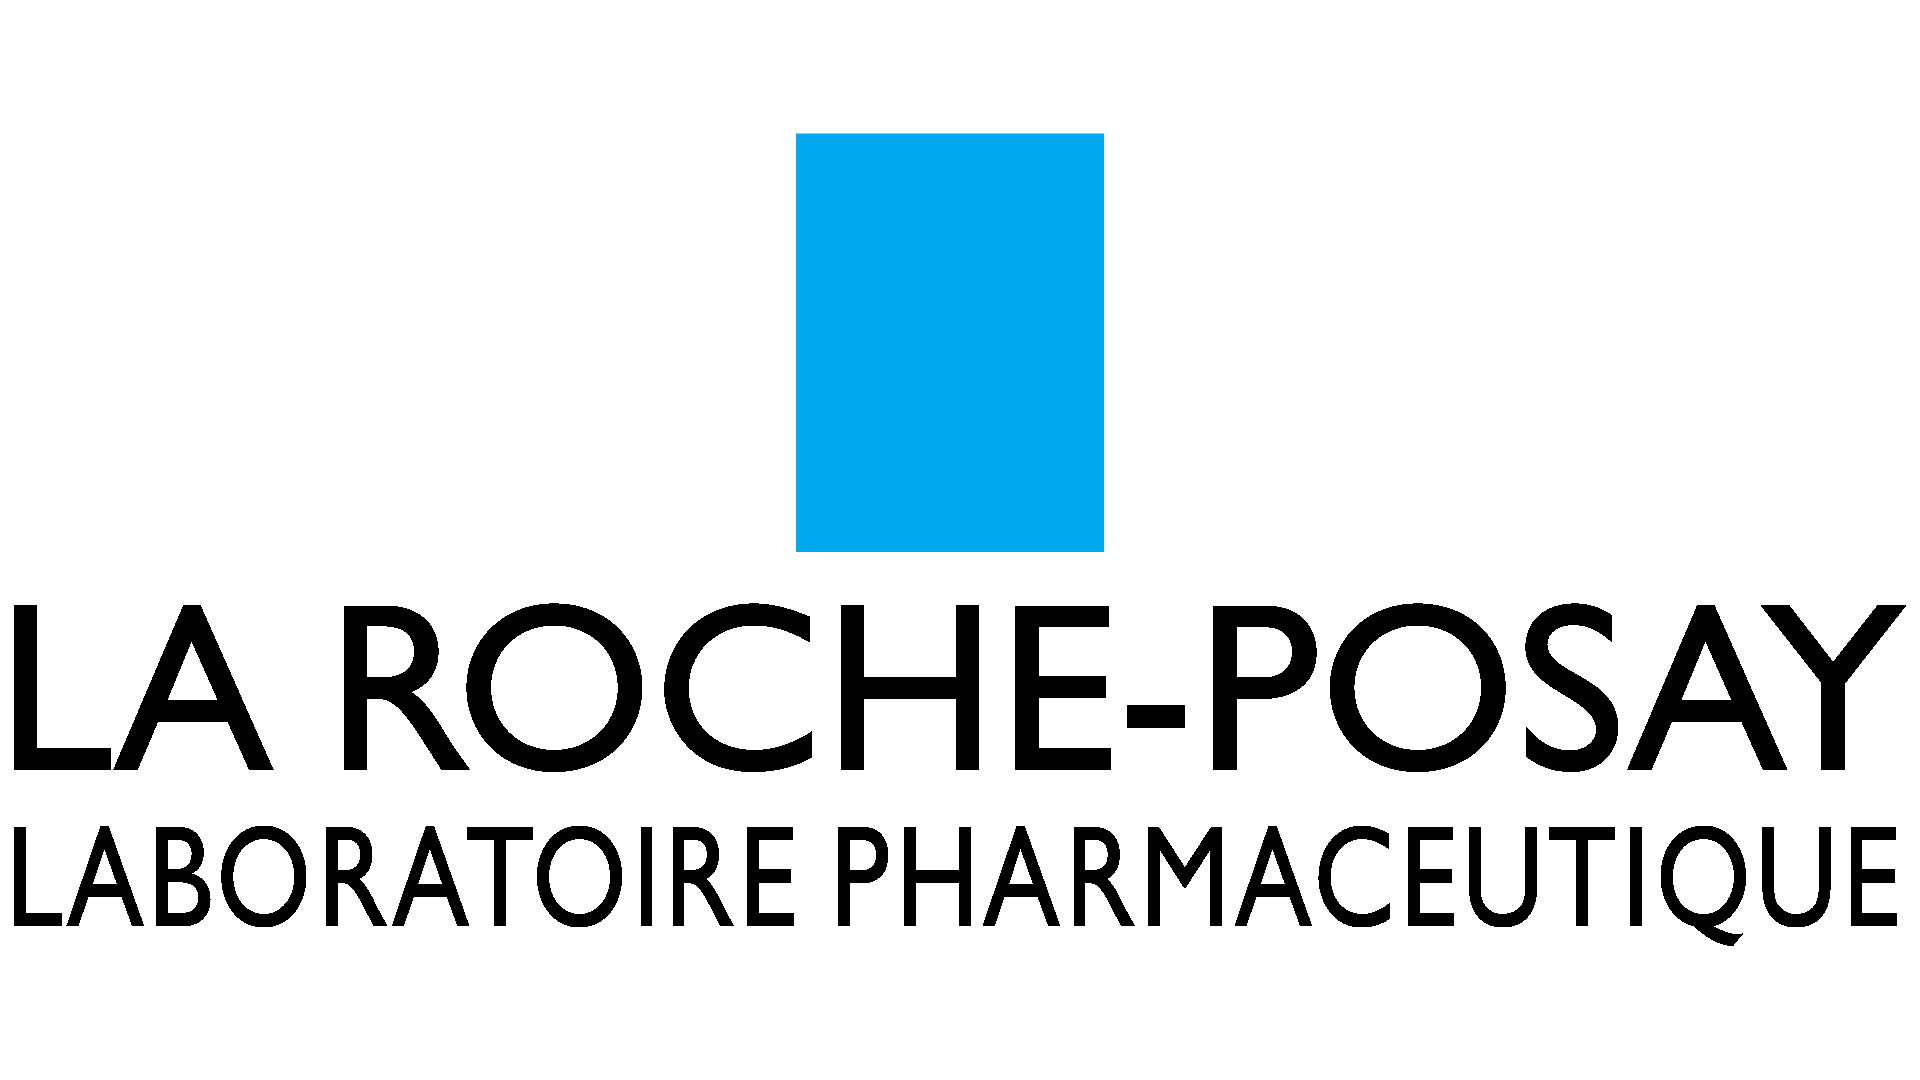 Brand: La Roche-posay